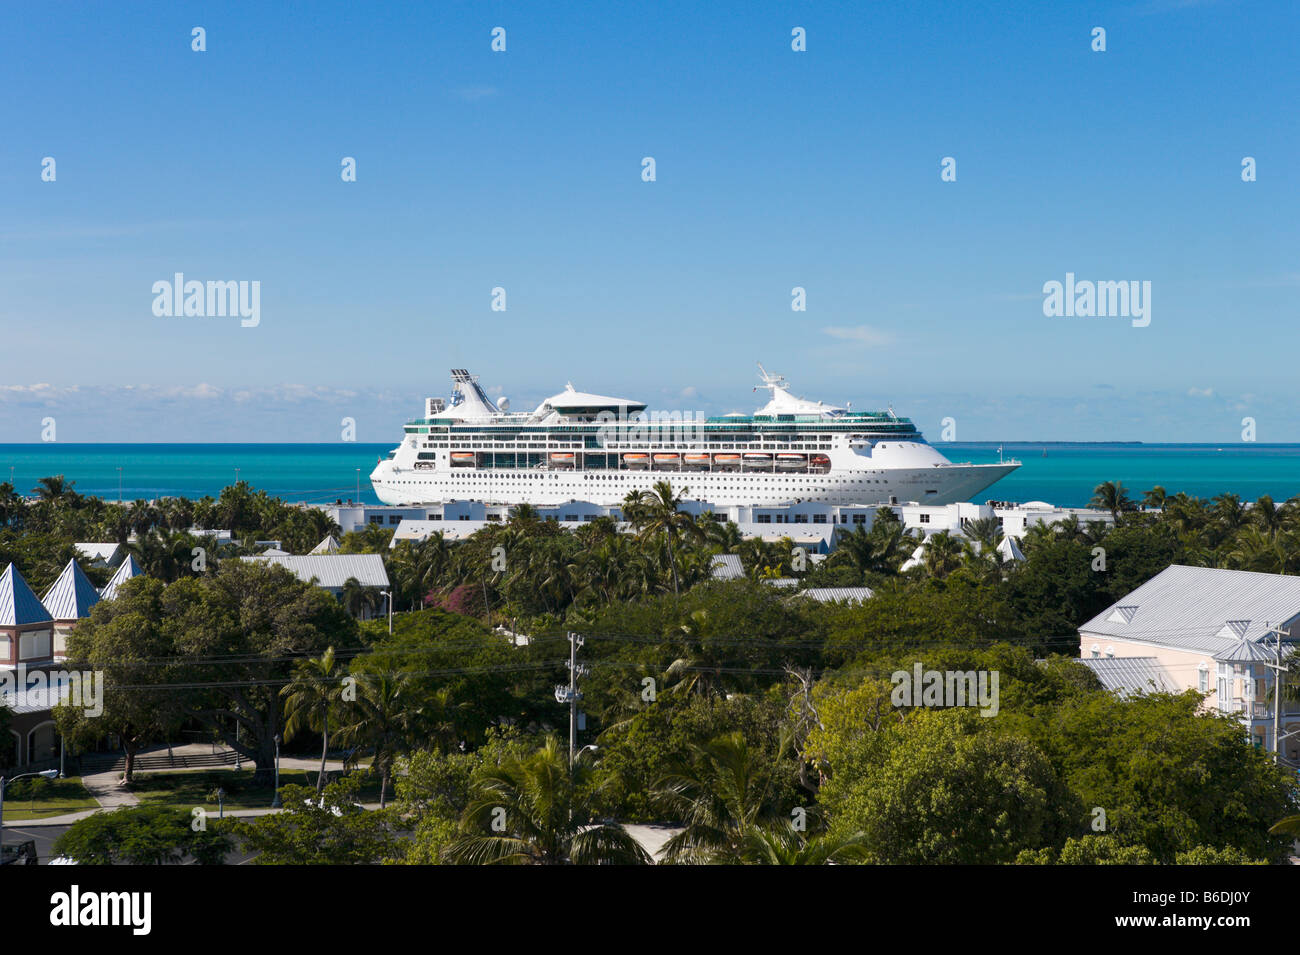 Il Royal Caribbean Cruise Ship 'grandeur dei mari' ancorata al terminal delle navi da crociera, Key West, Florida Keys, STATI UNITI D'AMERICA Foto Stock